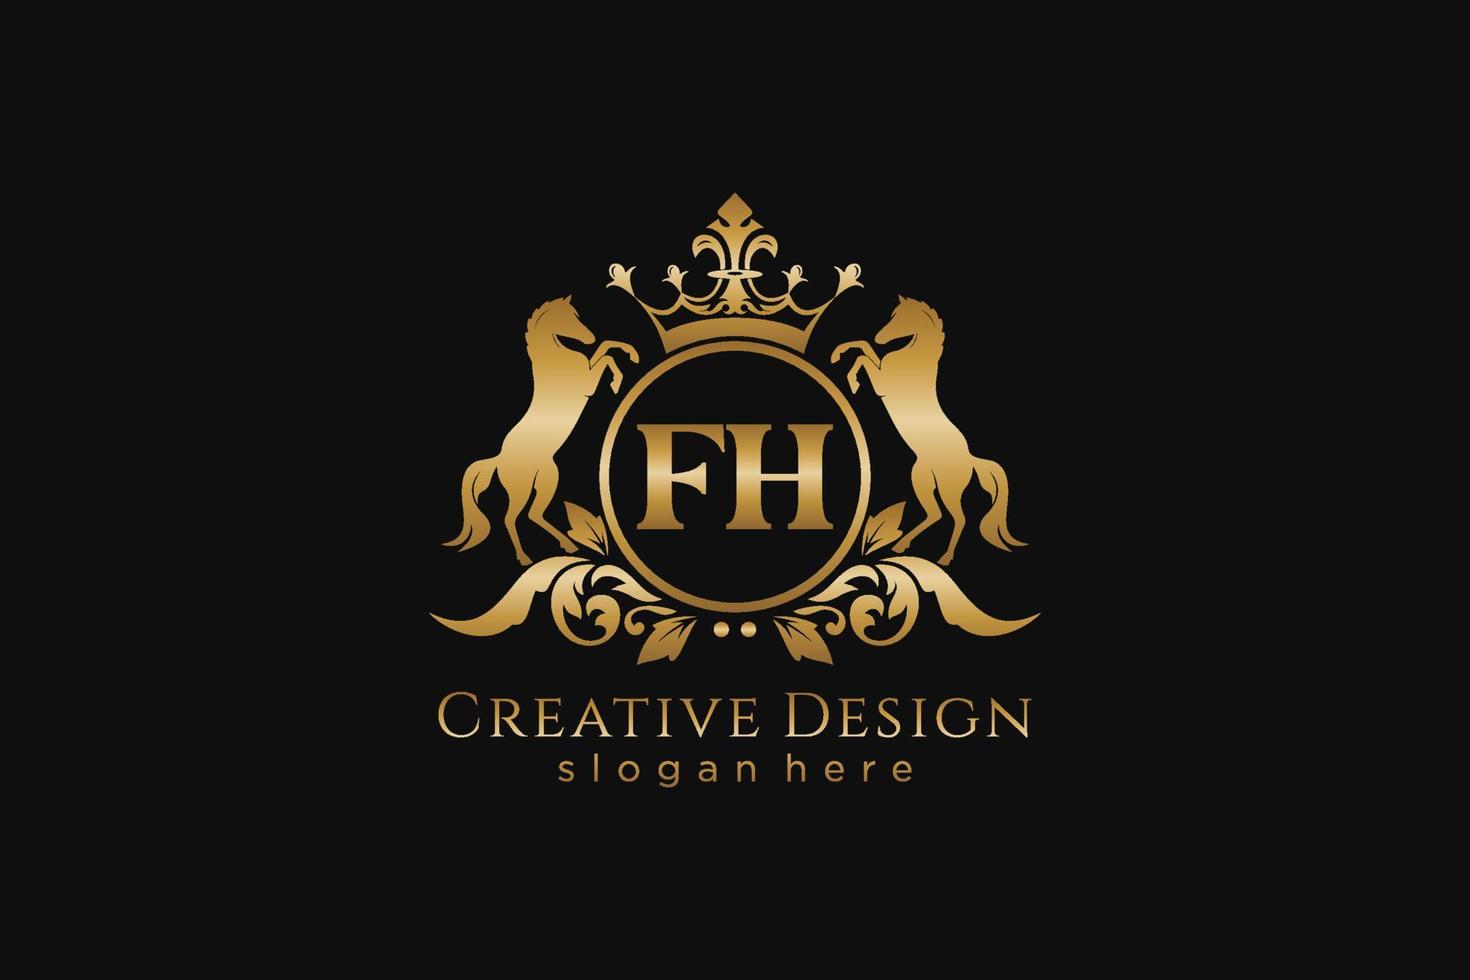 cresta dorada retro fh inicial con círculo y dos caballos, plantilla de insignia con pergaminos y corona real - perfecto para proyectos de marca de lujo vector